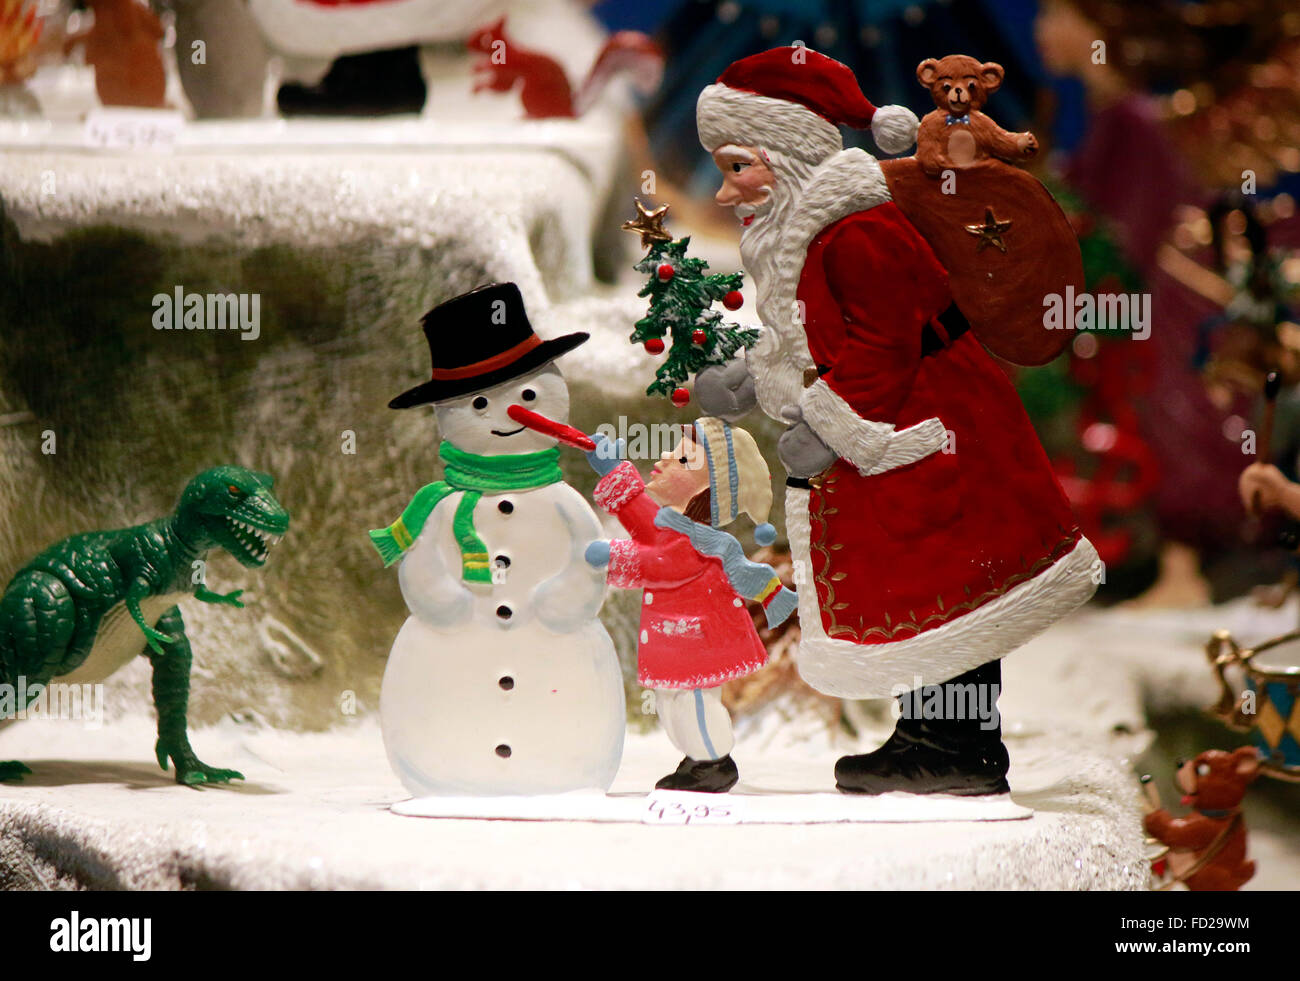 Weihnachtsmann, tipo, Schneemann, Weihnachtsbaum - Schaufensterdekoration zu Weihnachten, Berlino. Foto Stock